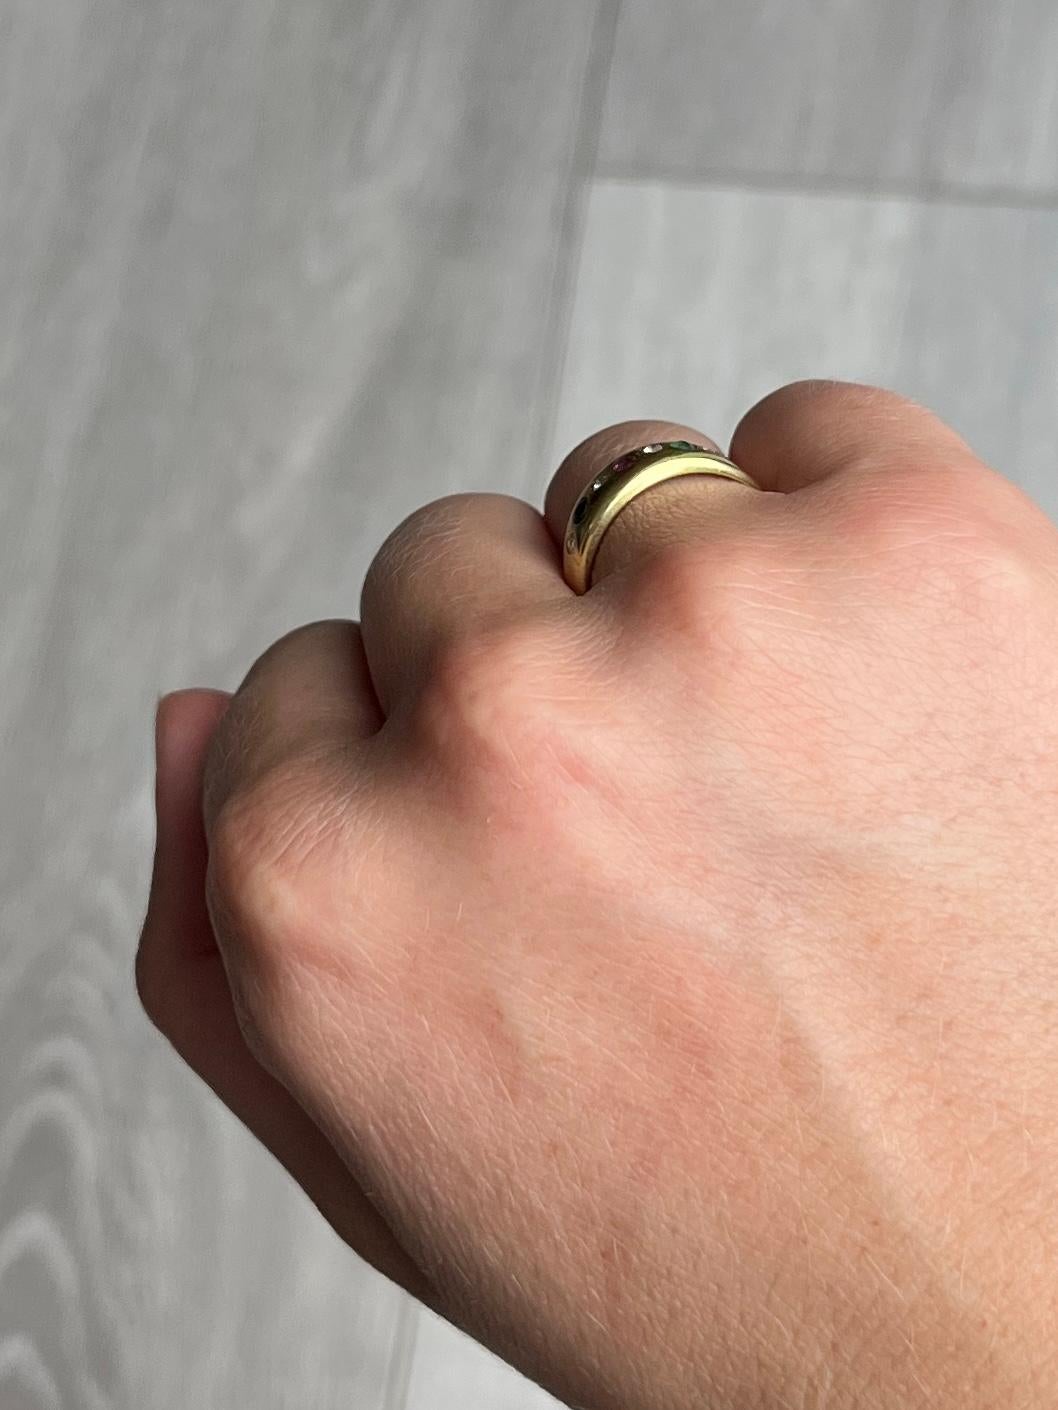 Dieses 8-karätige Goldband ist mit einem Rubin, einem Smaragd und einem Saphir besetzt, dazwischen liegen Diamanten. Die drei farbigen Steine messen jeweils 5 Pence und die Diamanten messen jeweils 3 Pence. 

Ring Größe: N oder 6 3/4 
Breite des